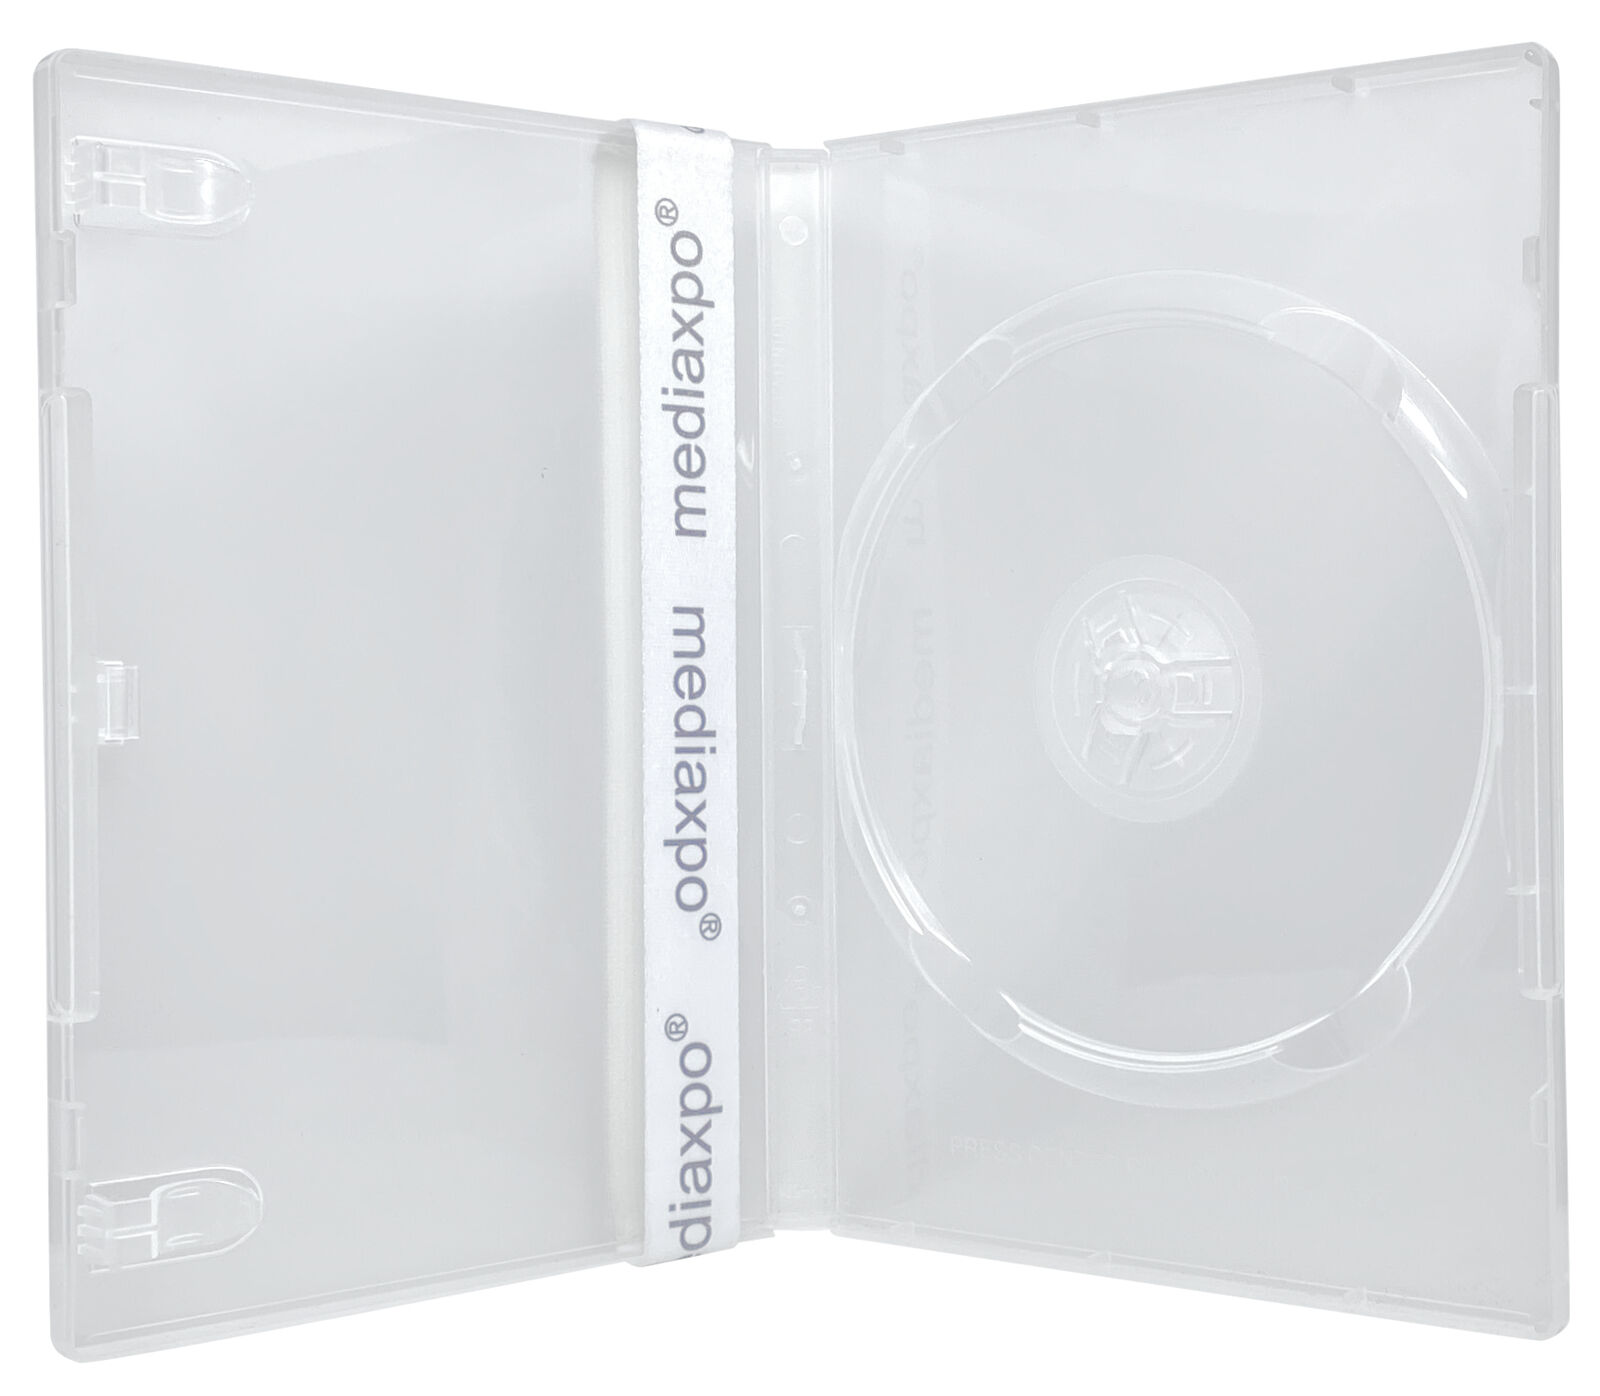 14mm Standard Super Clear 1 Disc DVD Case Lot